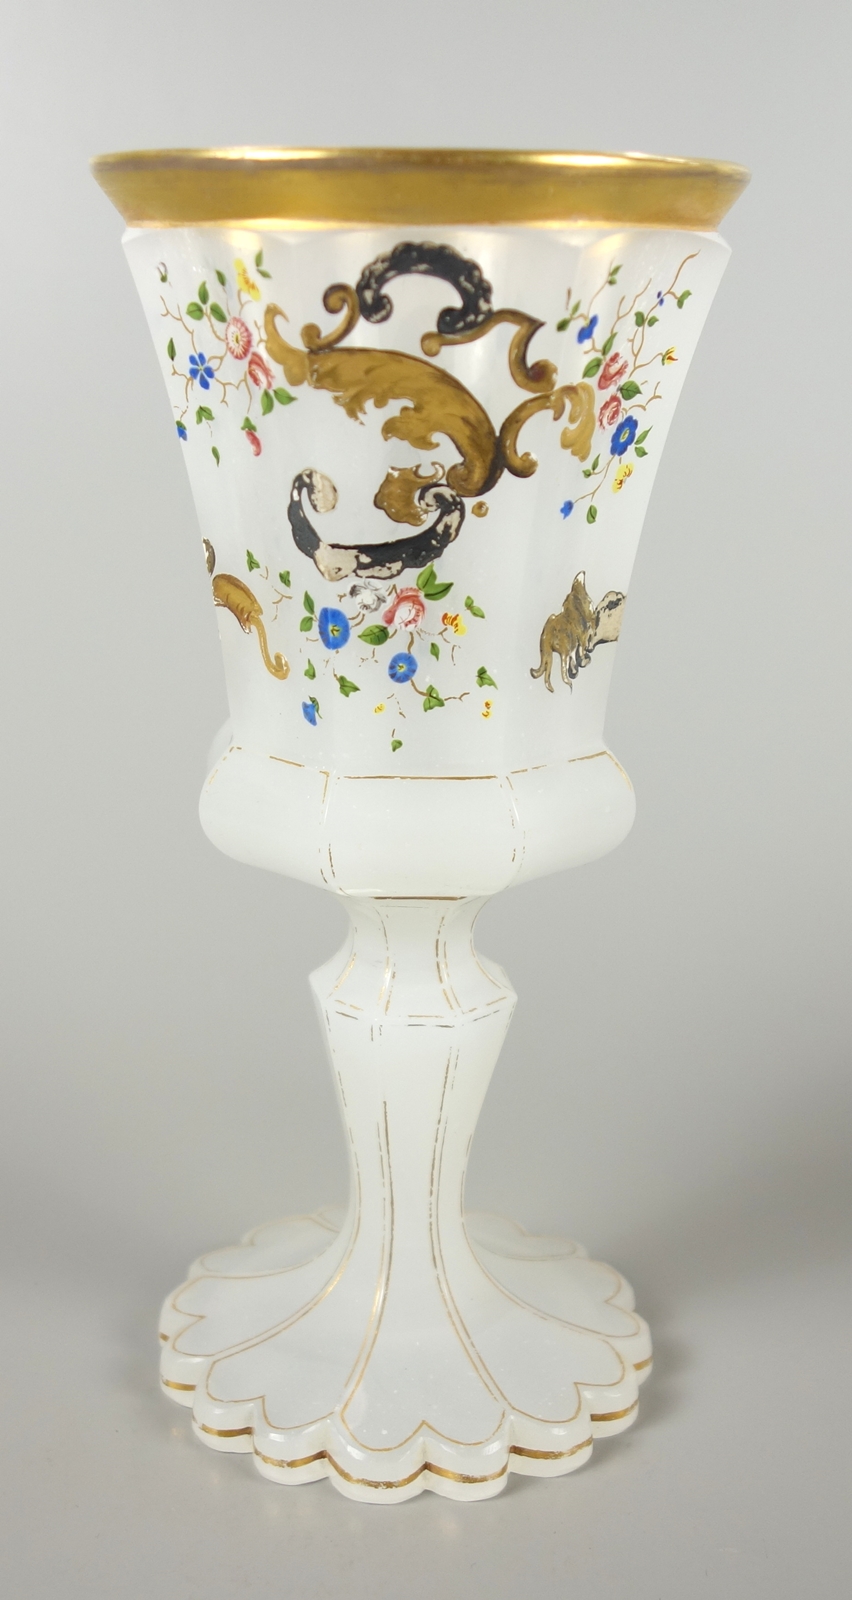 Pokalglas aus Alabasterglas, 19.Jh.gekerbter Stand, facettierter Schaft, Goldkonturen, facet